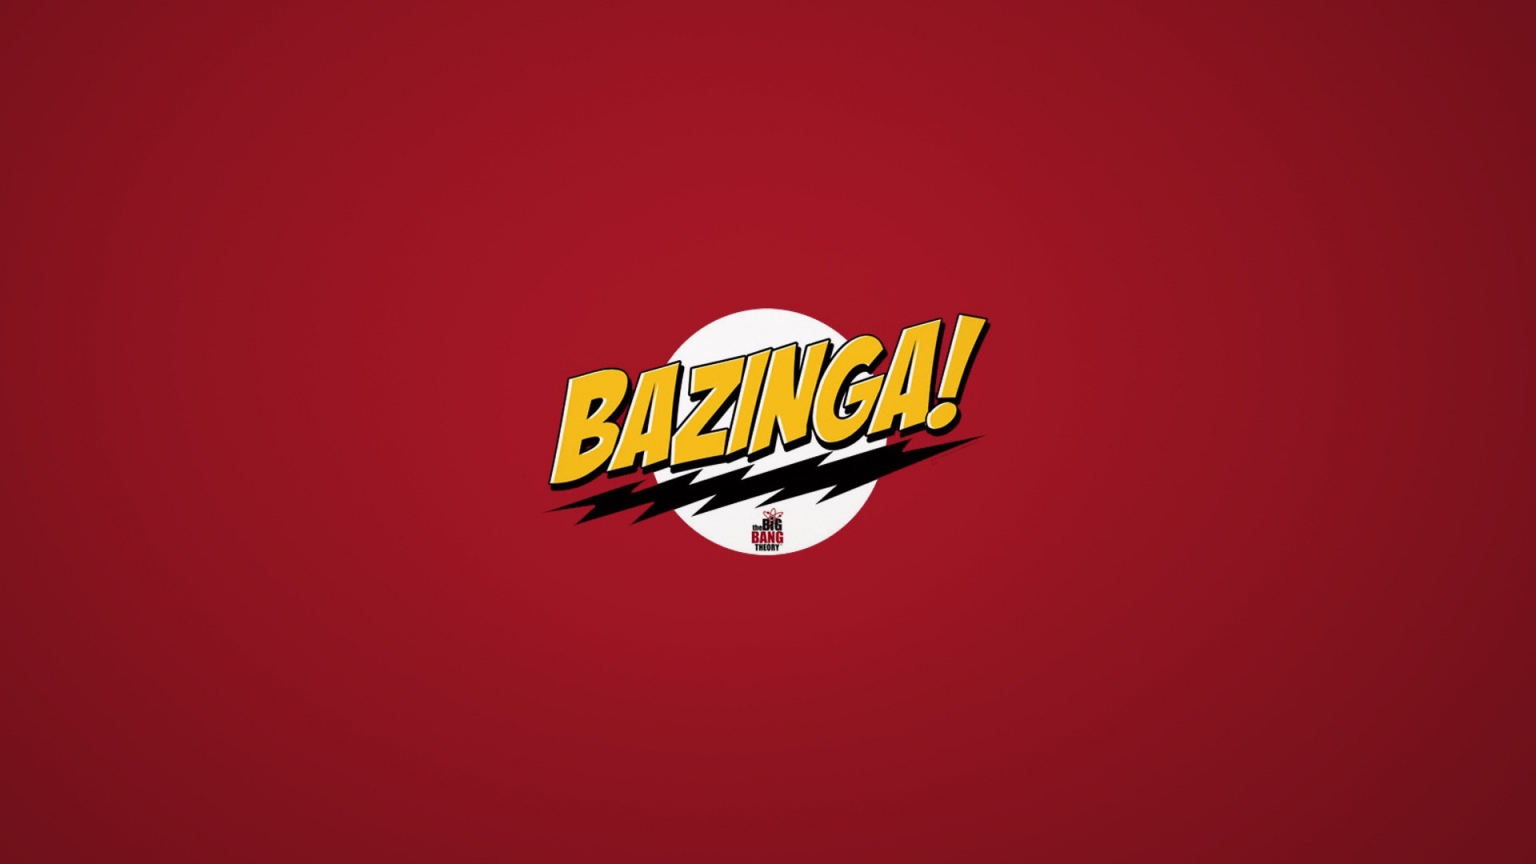 The Big Bang Theory Bazinga for 1536 x 864 HDTV resolution